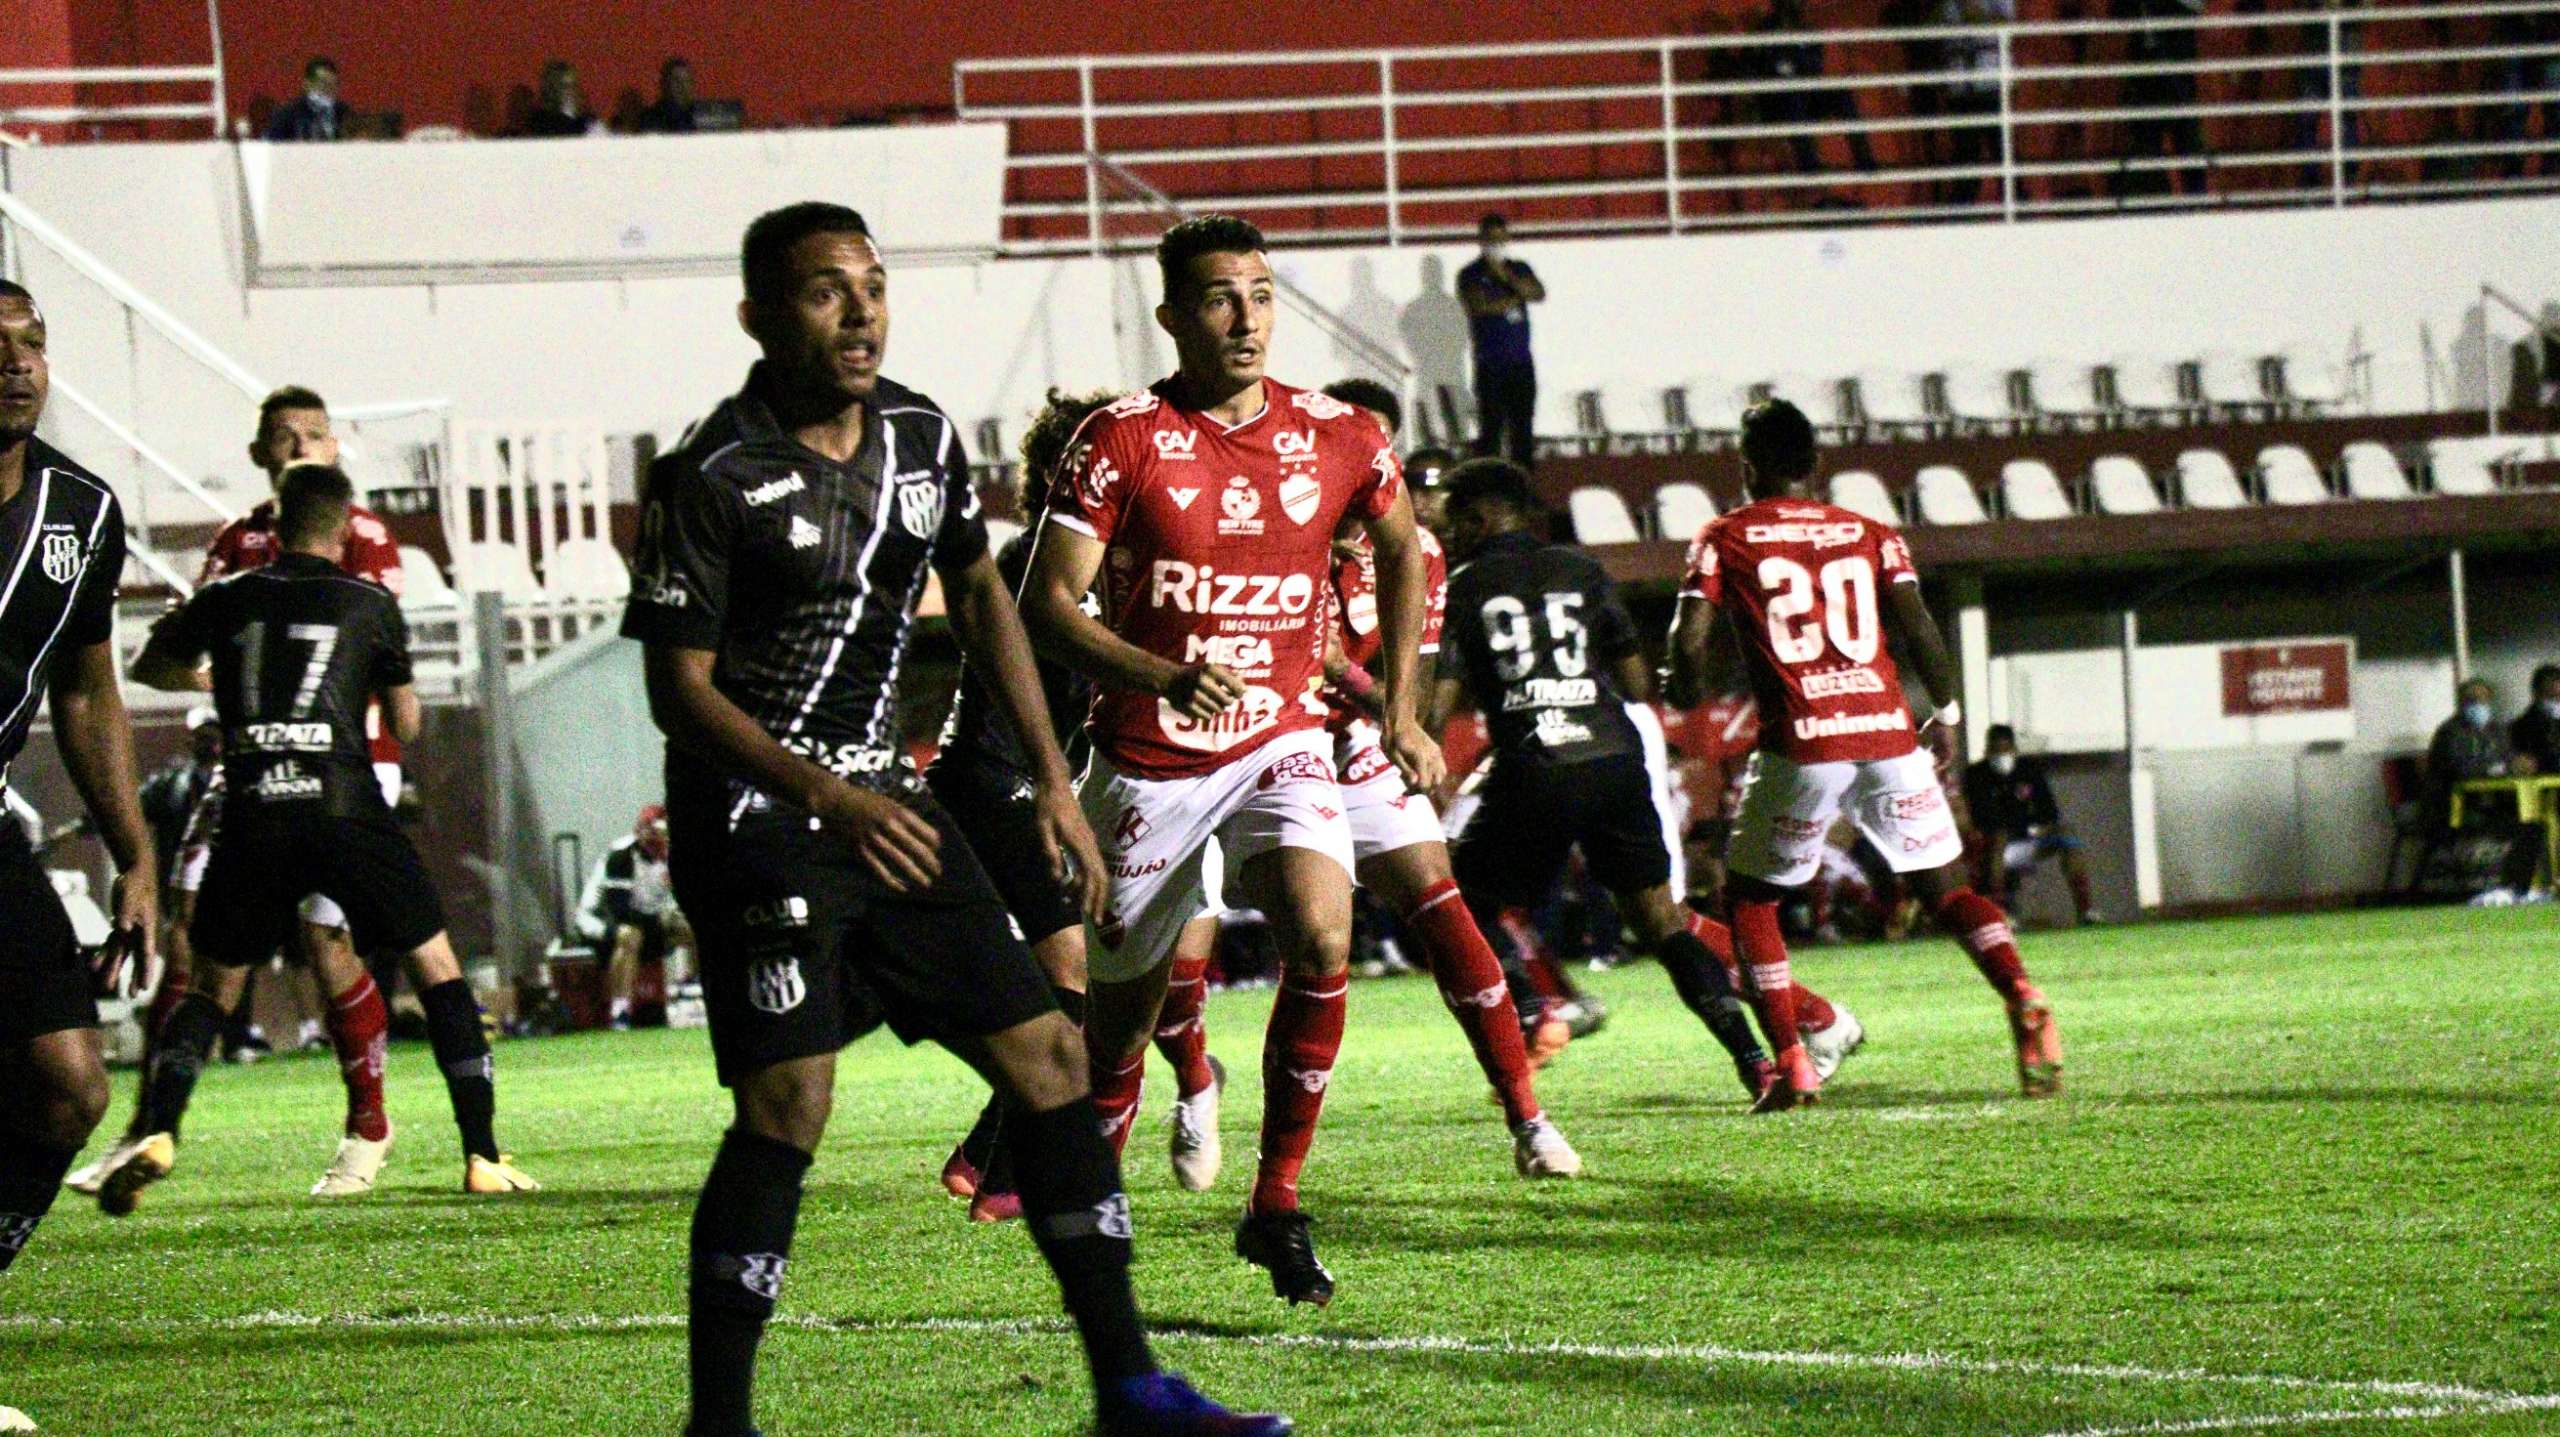 Vila Nova 0 x 0 Ponte Preta – Jogo feio, empate justo na Série B